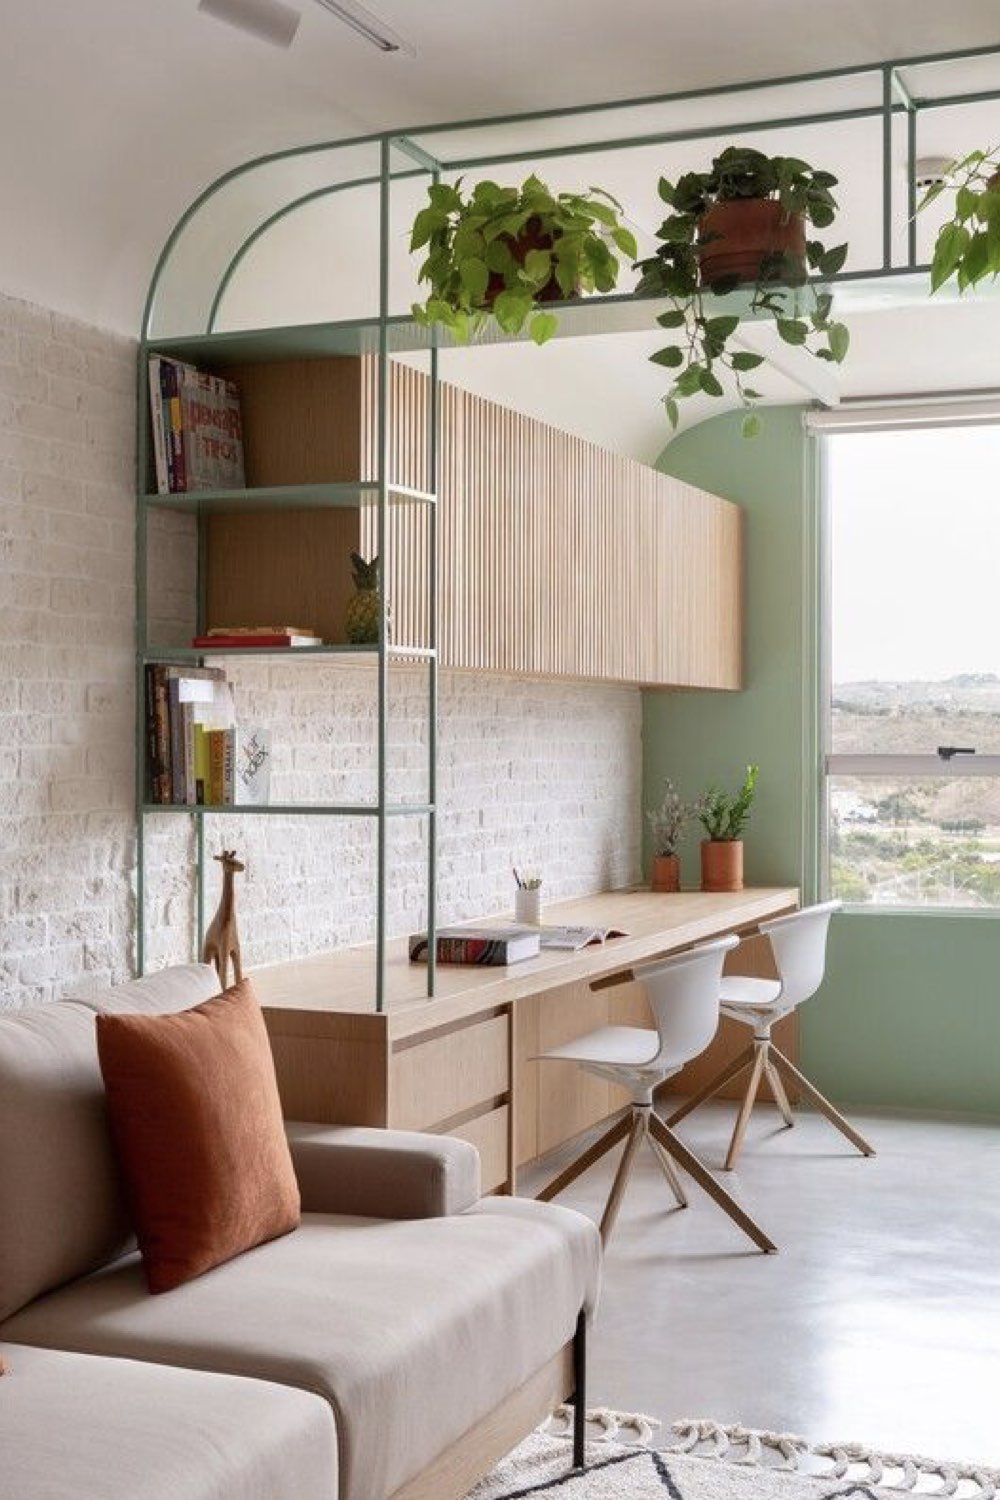 decor bureau reussi exemple continuité du salon aménagement intérieur claustra étagères séparation design vert simple mobilier sur mesure en bois